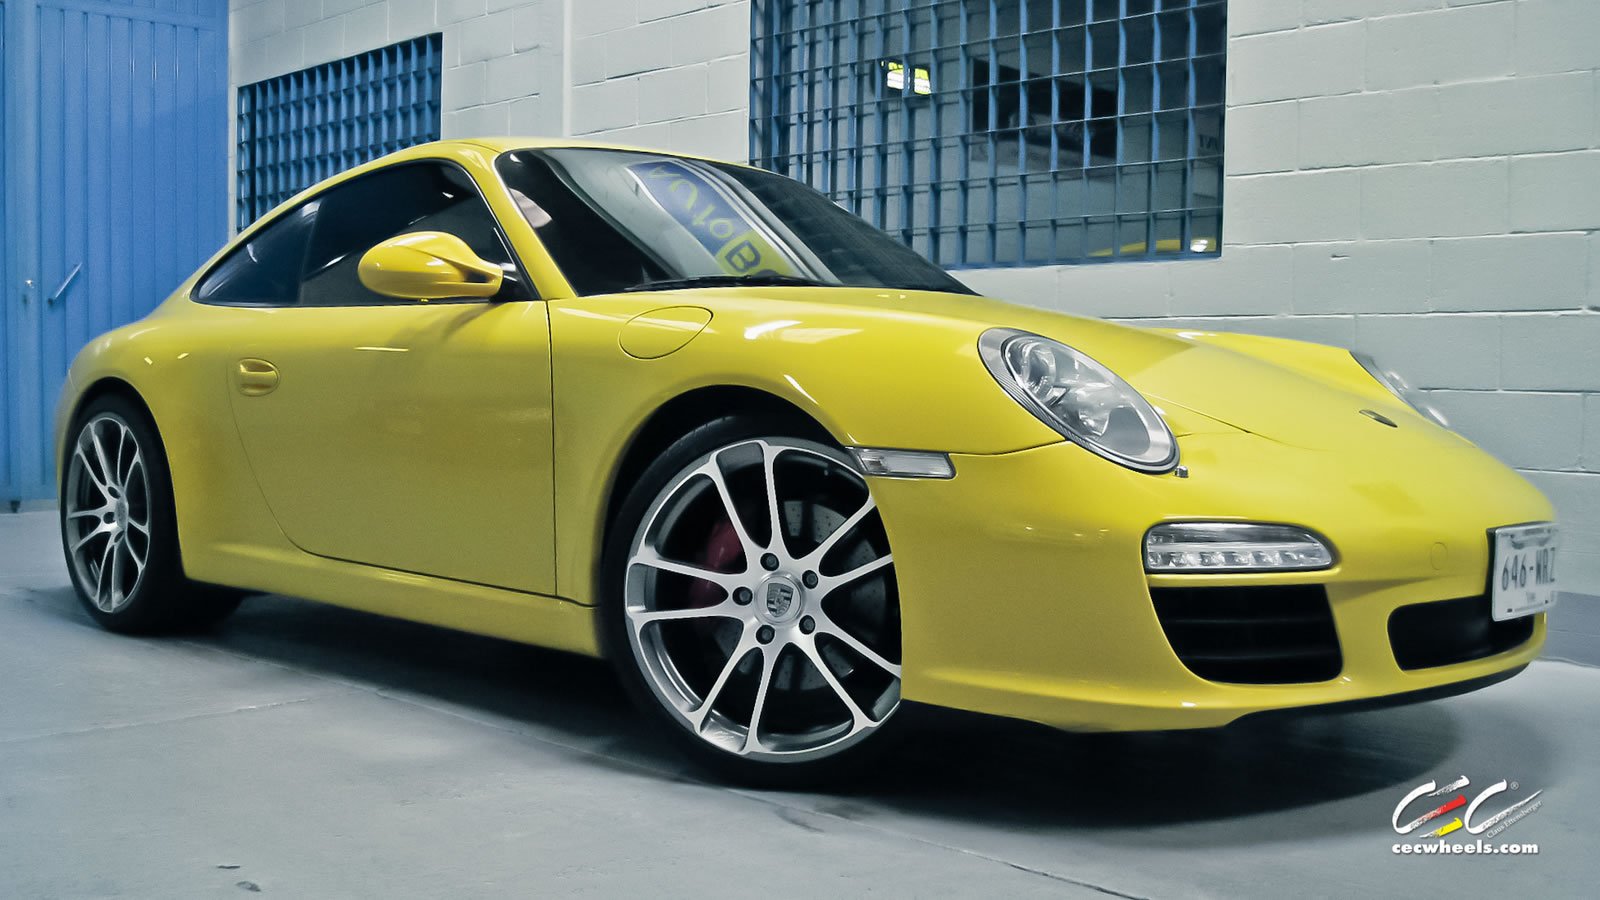 2015, Cars, Cec, Tuning, Wheels, Porsche, 911, Carrera Wallpaper